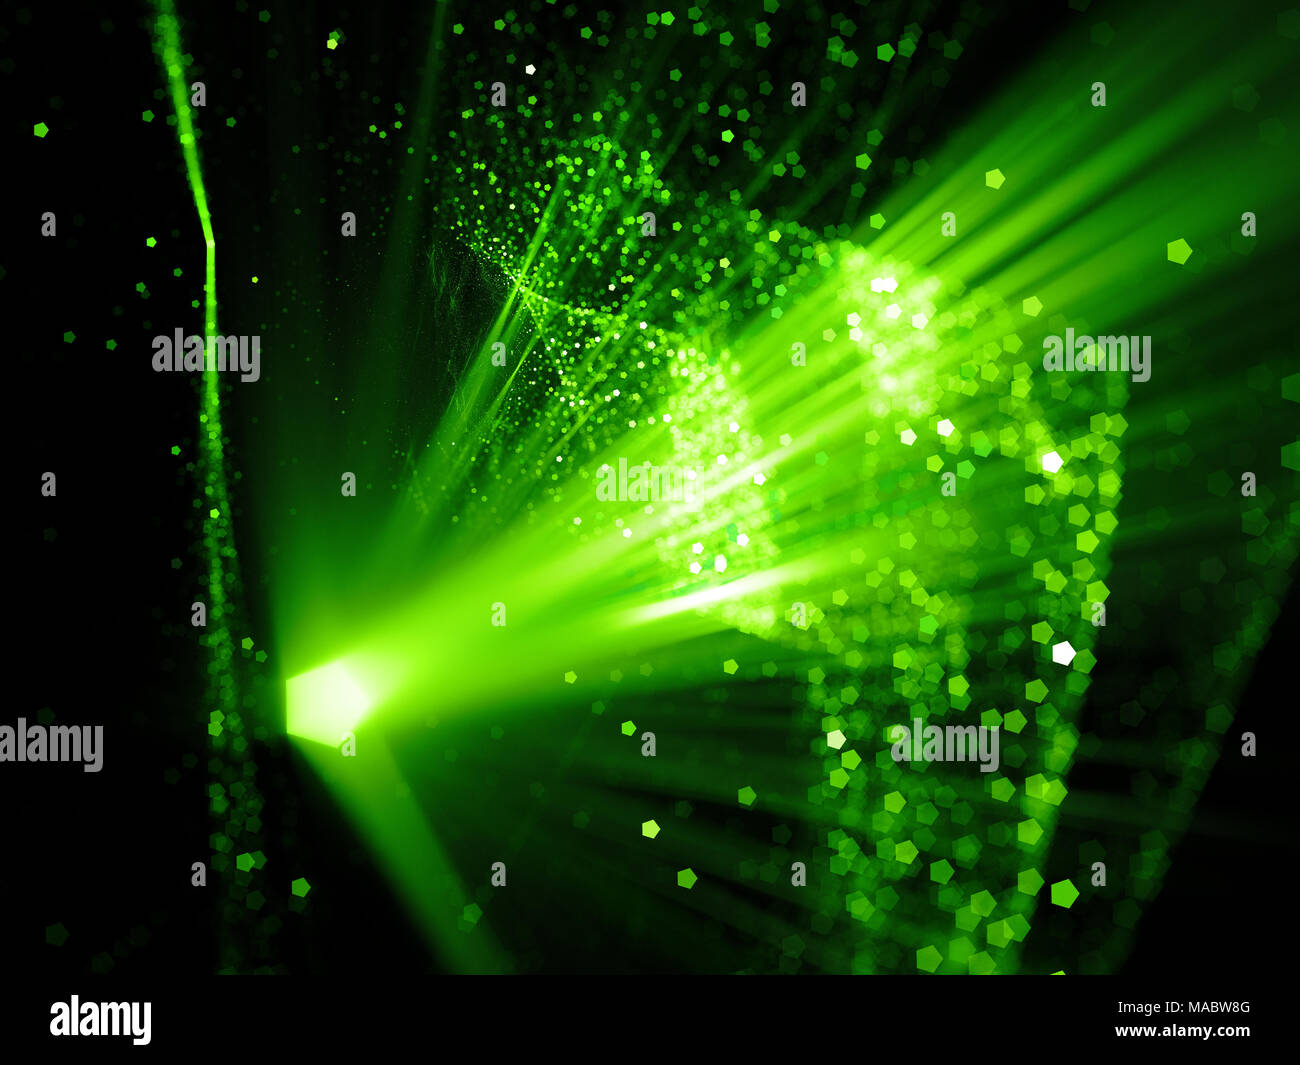 Grün leuchtende innovierte Raumfahrt, Computer-generierte Zusammenfassung Hintergrund, 3D-Rendering Stockfoto